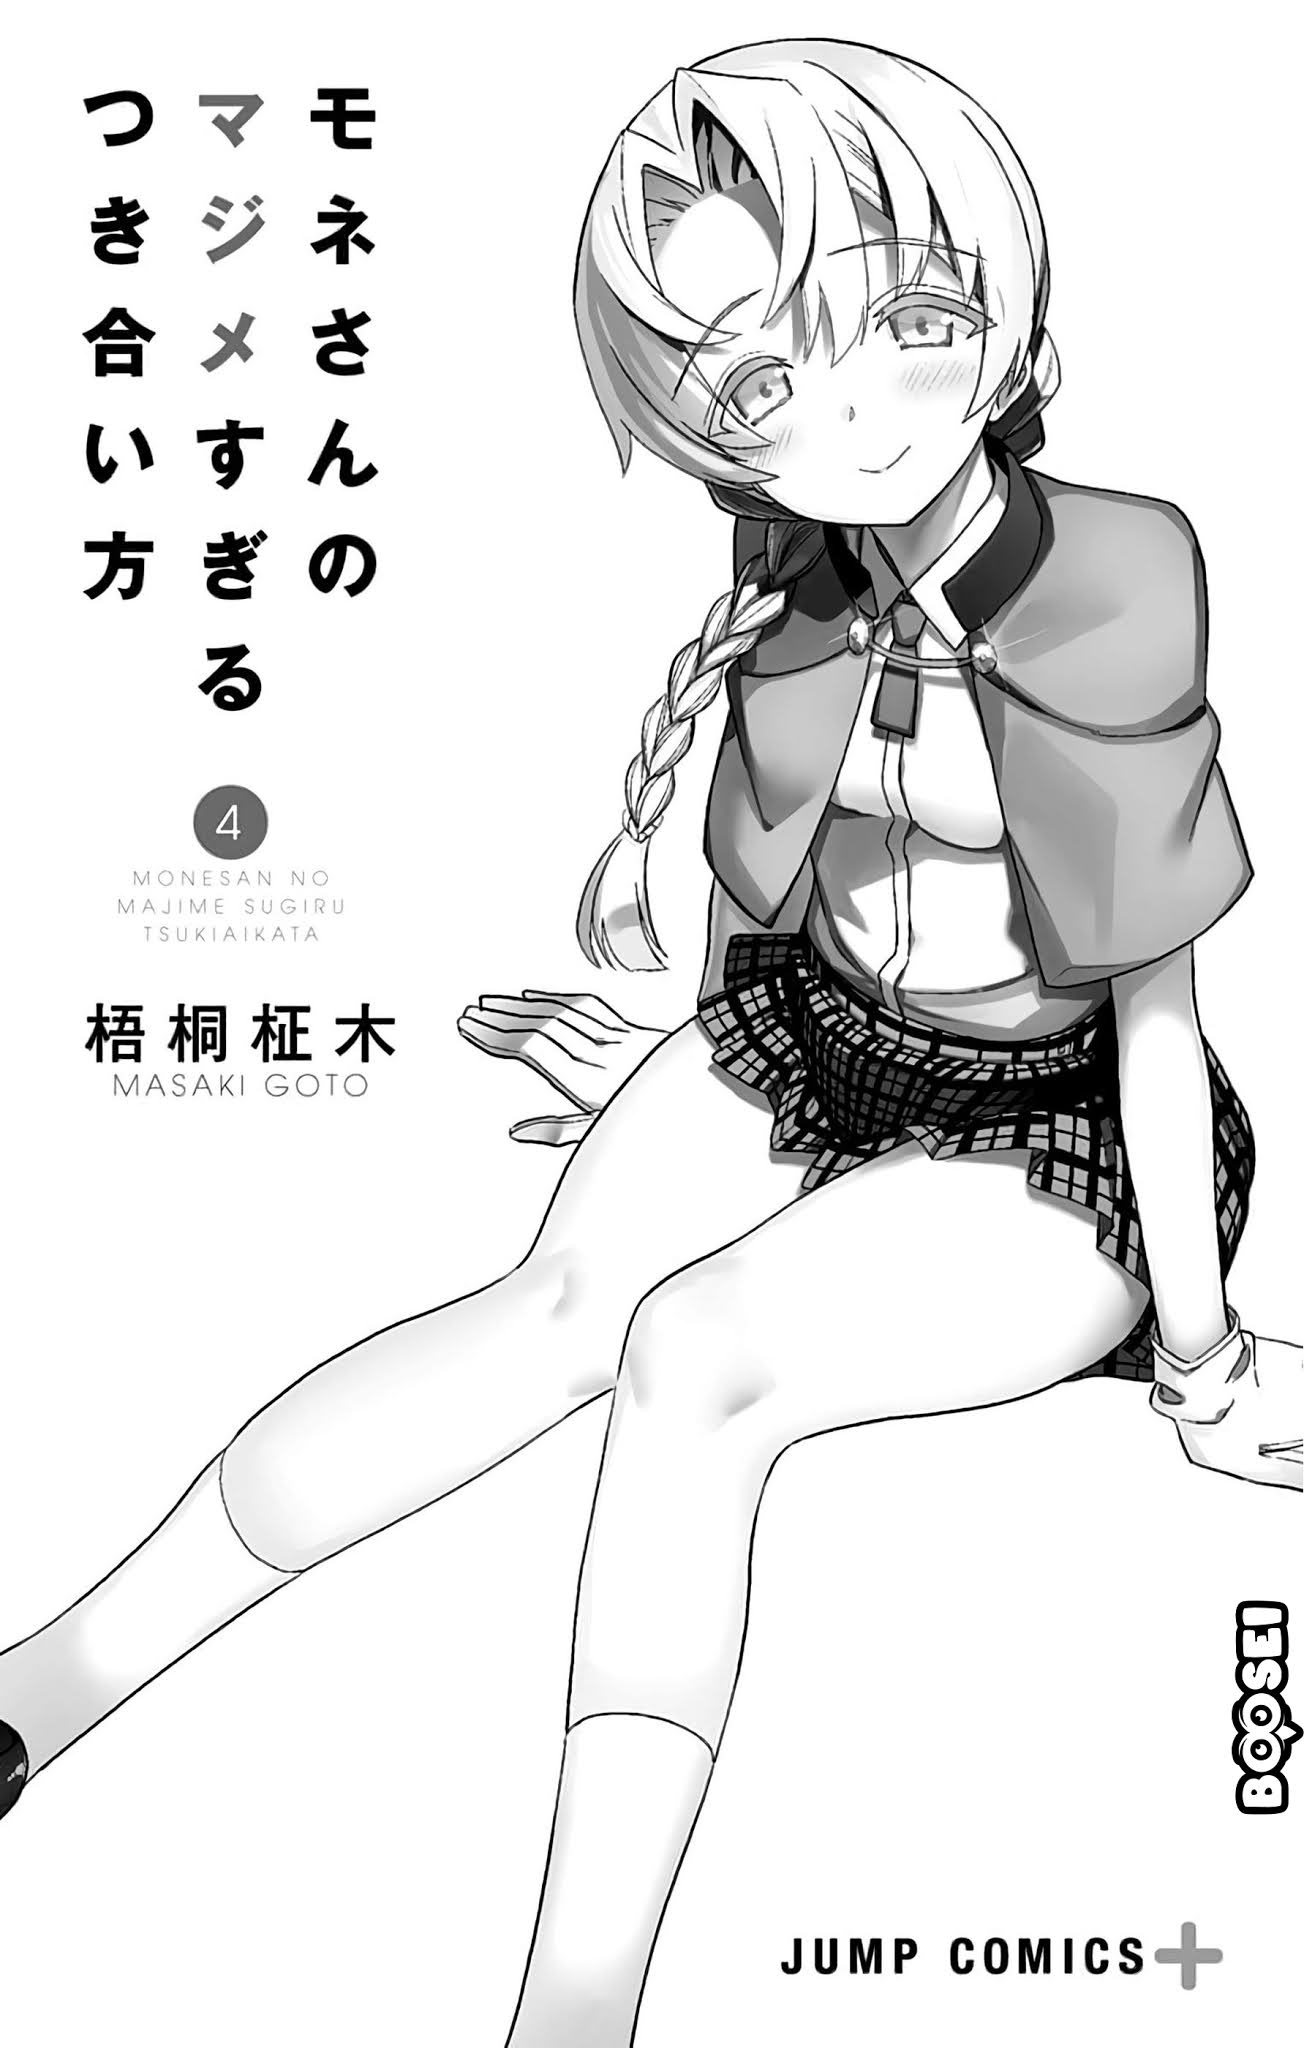 Mone-san no Majime Sugiru Tsukiaikata Chapter 38.5